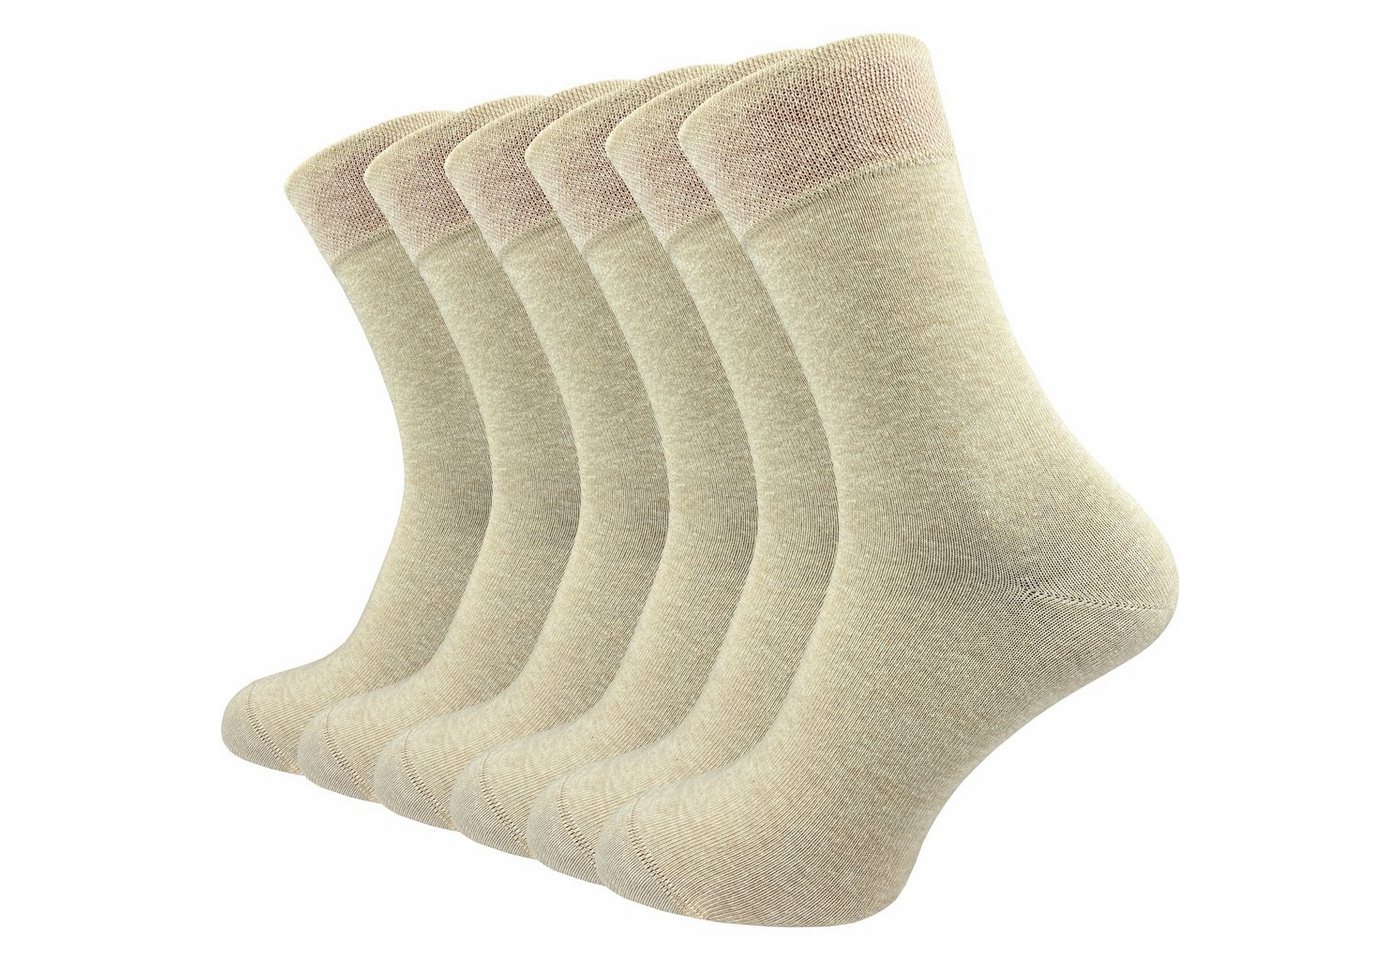 GAWILO Socken für Damen & Herren - Premium Komfortbund ohne drückende Naht (6 Paar) schwarz, grau & blau - aus hochwertiger, doppelt gekämmter Baumwolle von GAWILO